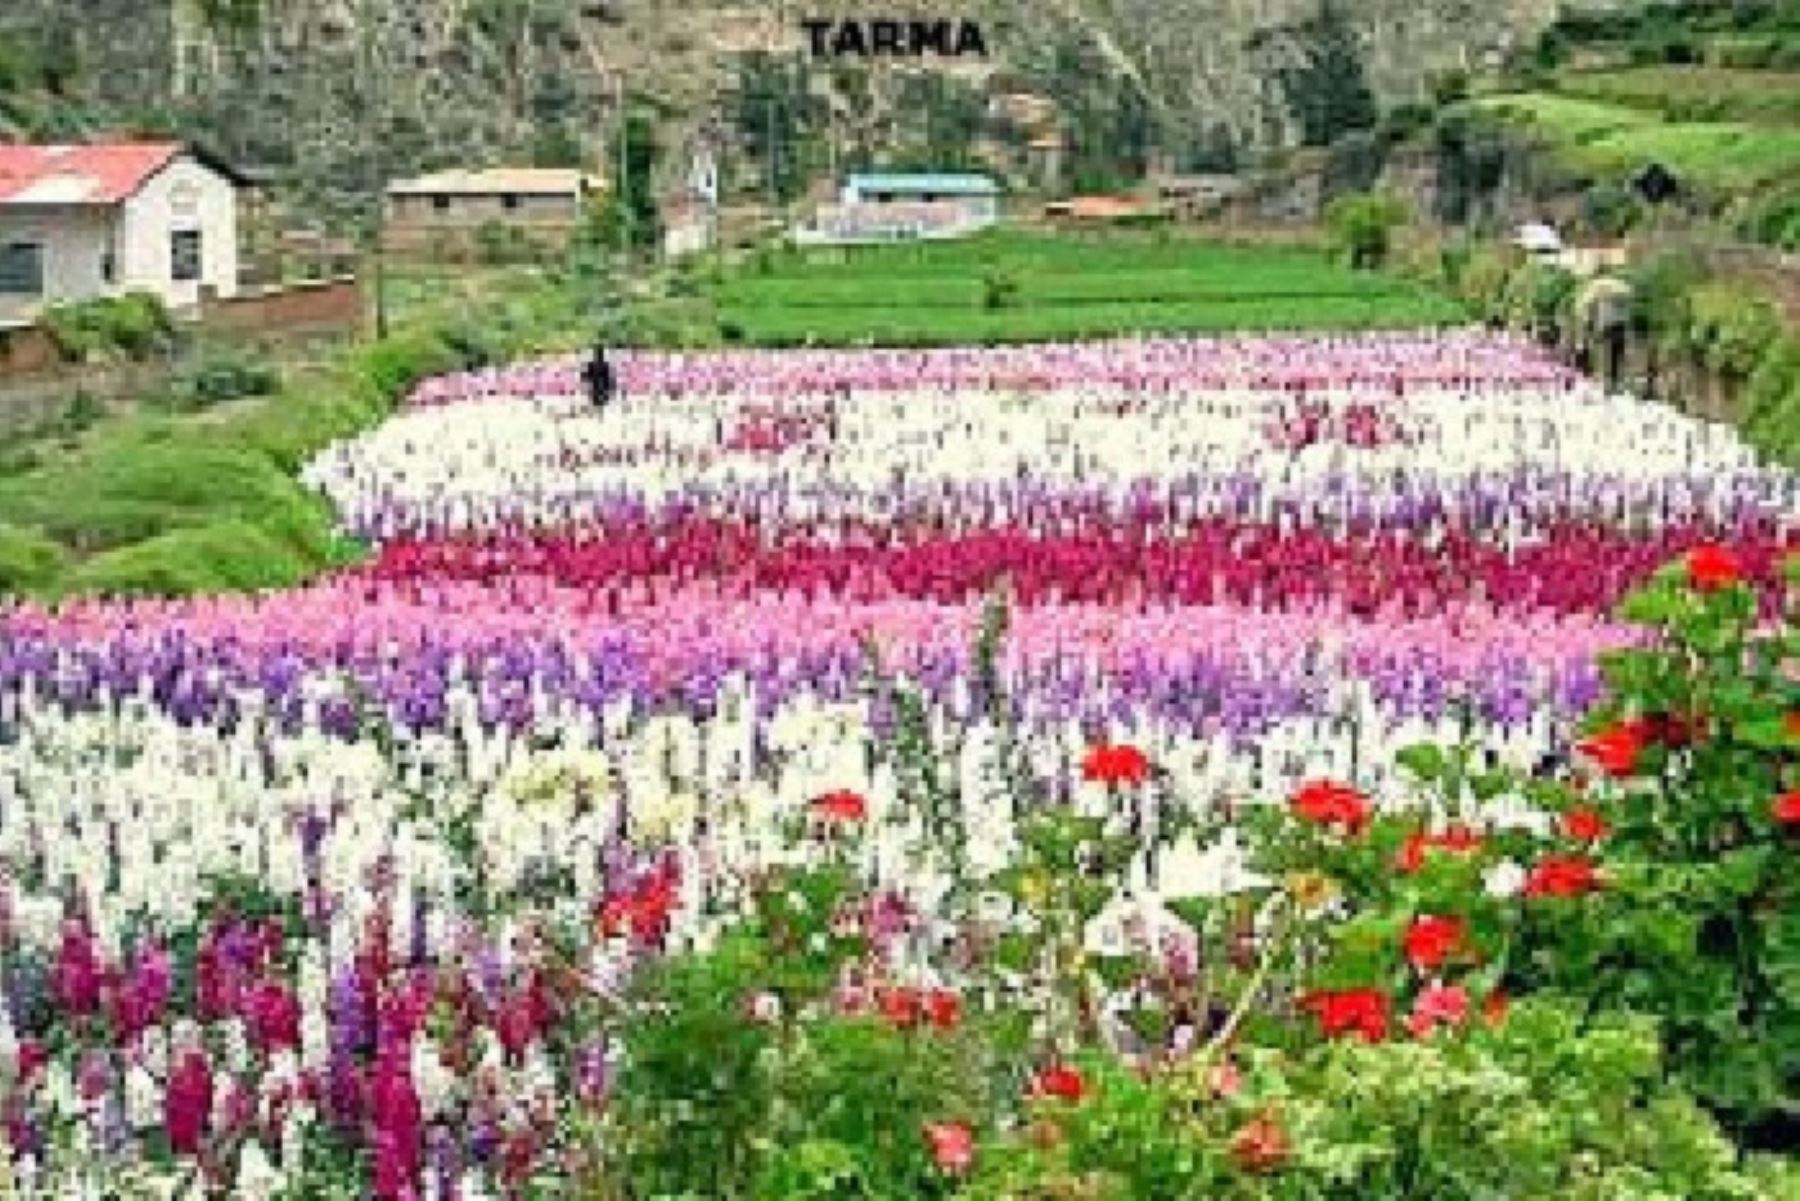 A 5 kilómetros de la ciudad de Tarma, en la zona denominada Chuchupampa se ubica el valle de las flores,